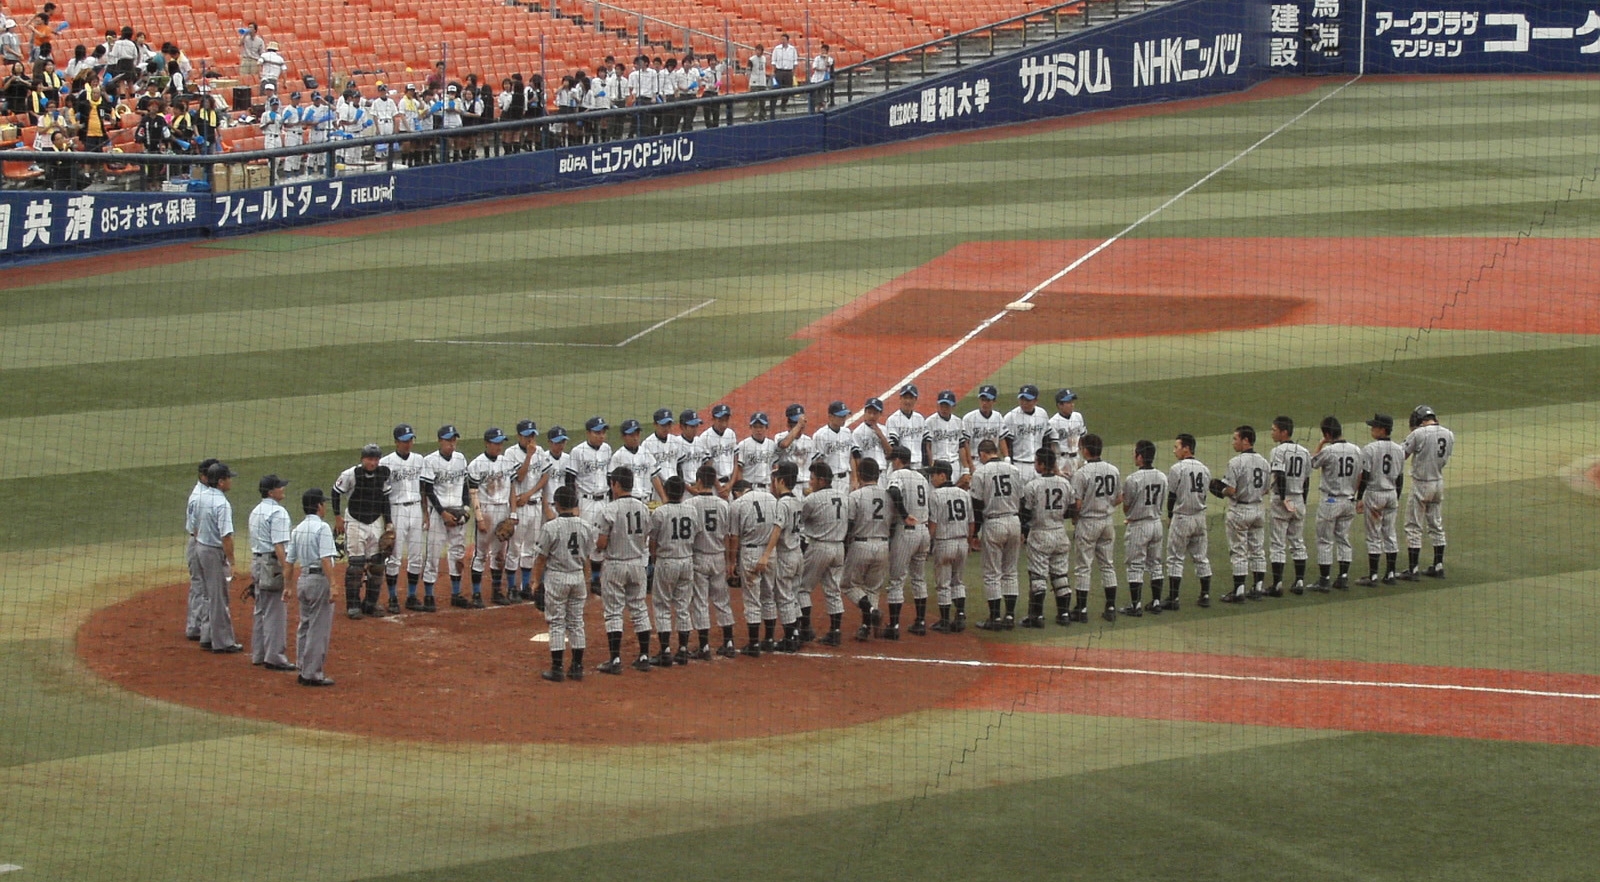 Baseball players in Yokohama Stadium.